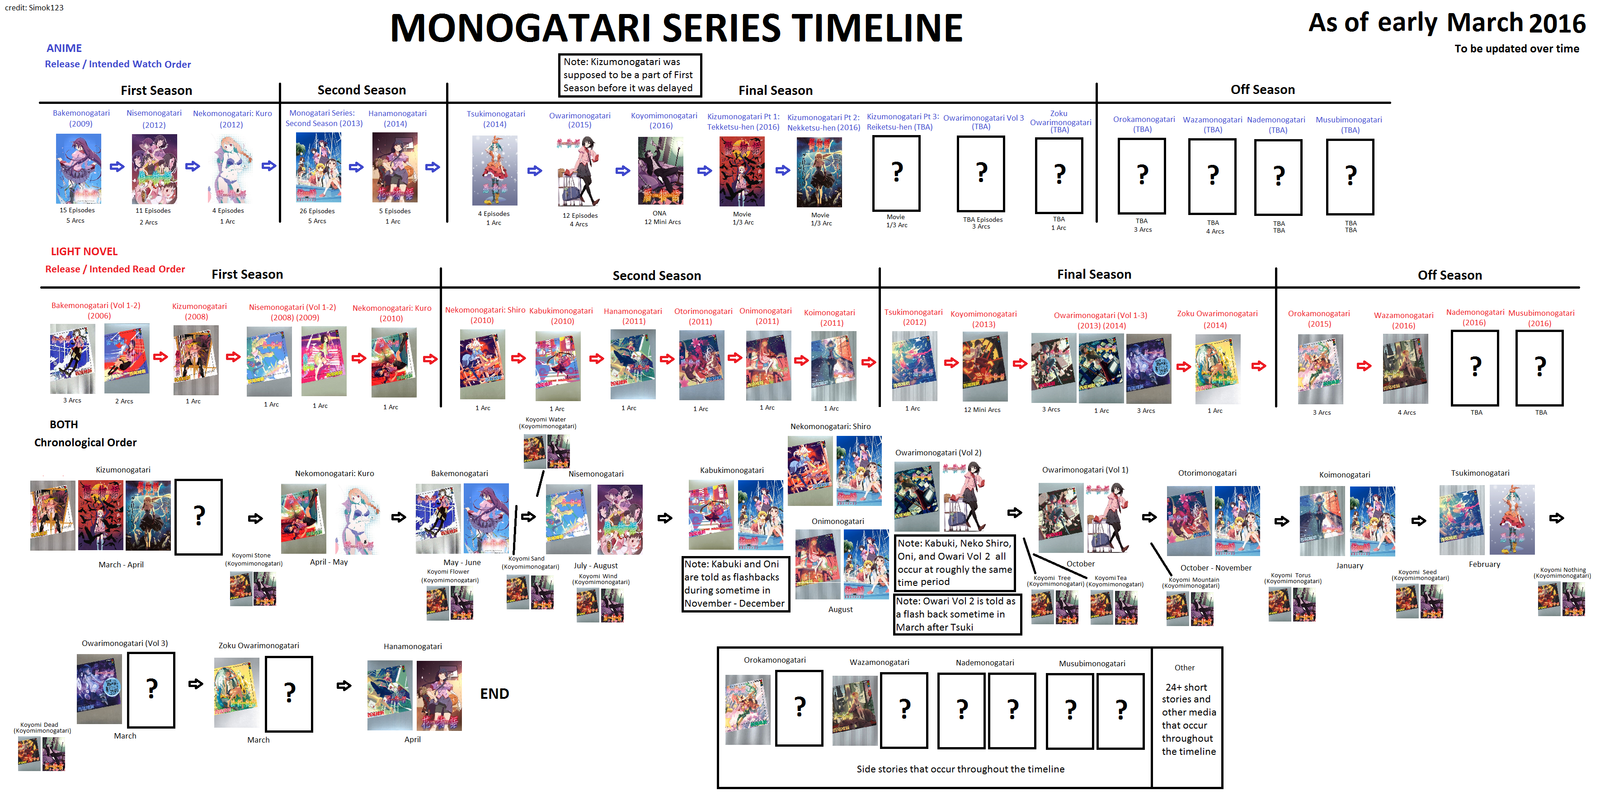 Monogatari timeline - Anime, Monogatari series, Timeline